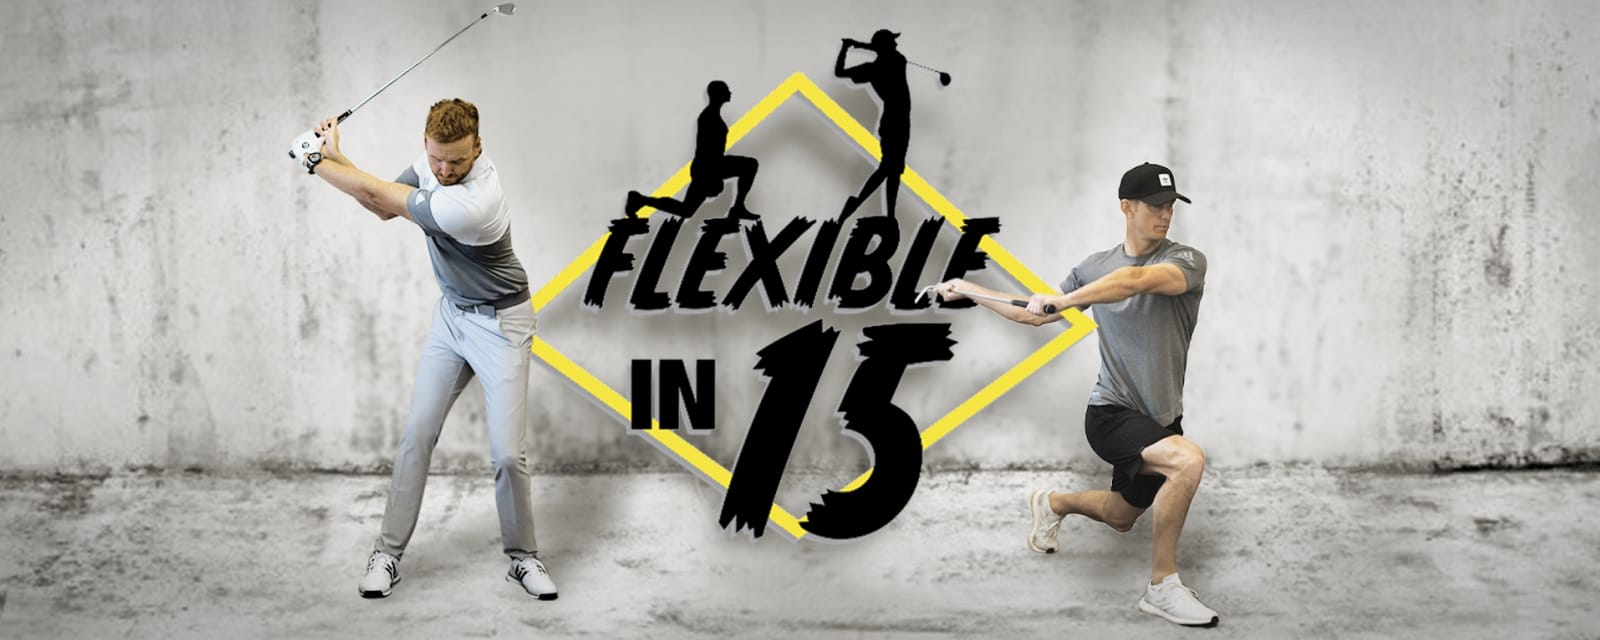 Flexible In 15